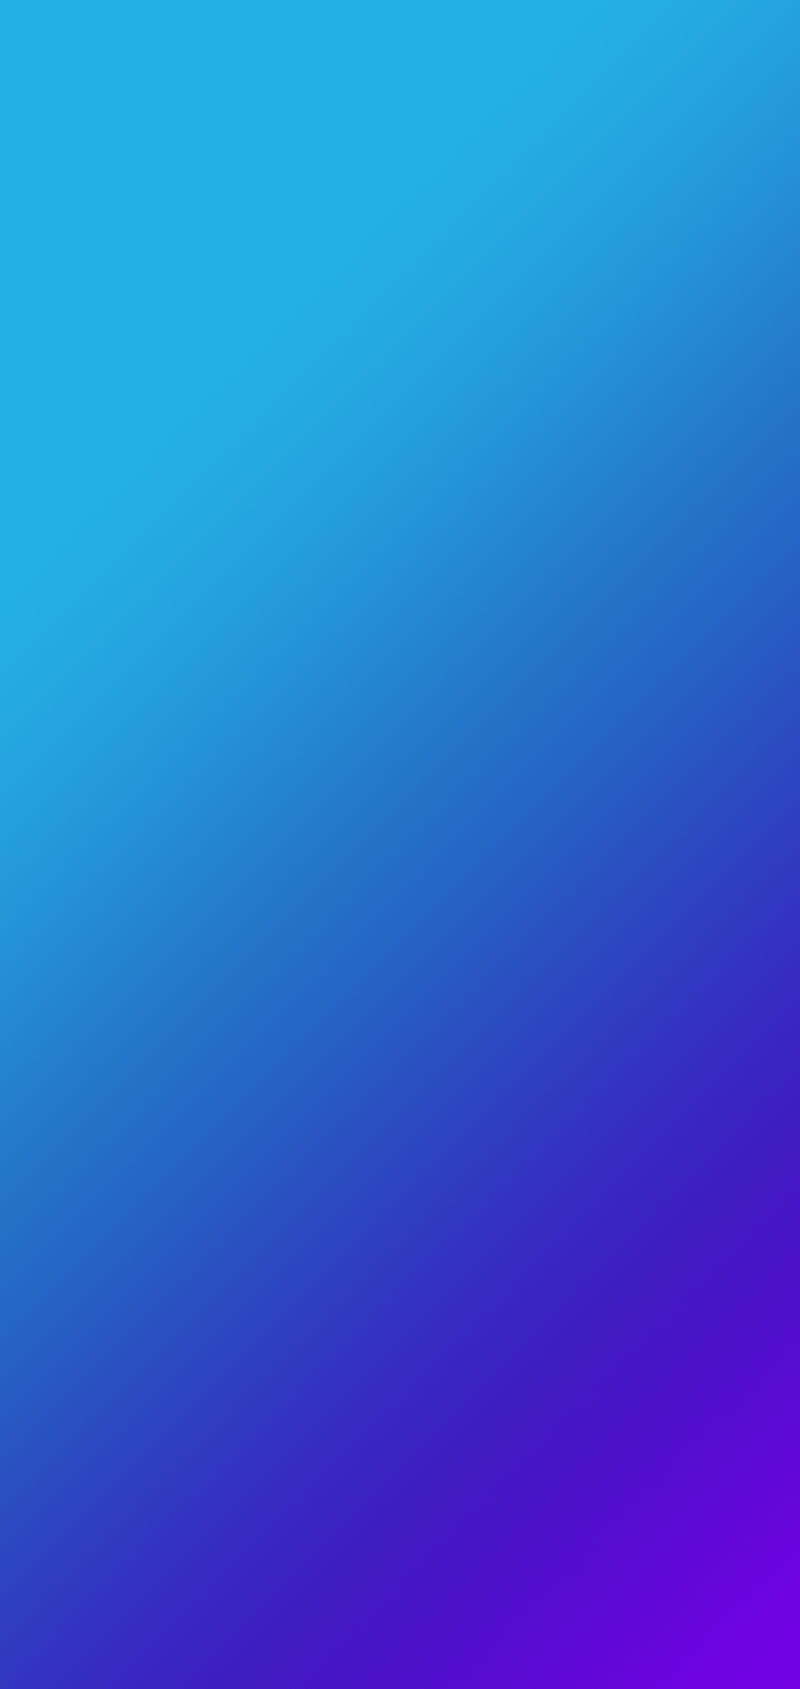 Gradient Blue Blur là một trong những xu hướng thiết kế hấp dẫn nhất hiện nay và được sử dụng rộng rãi trong các ứng dụng Android. Hãy xem hình ảnh liên quan đến từ khóa này để nhận được cảm hứng thiết kế và tạo ra các giao diện tuyệt vời cho ứng dụng của bạn.